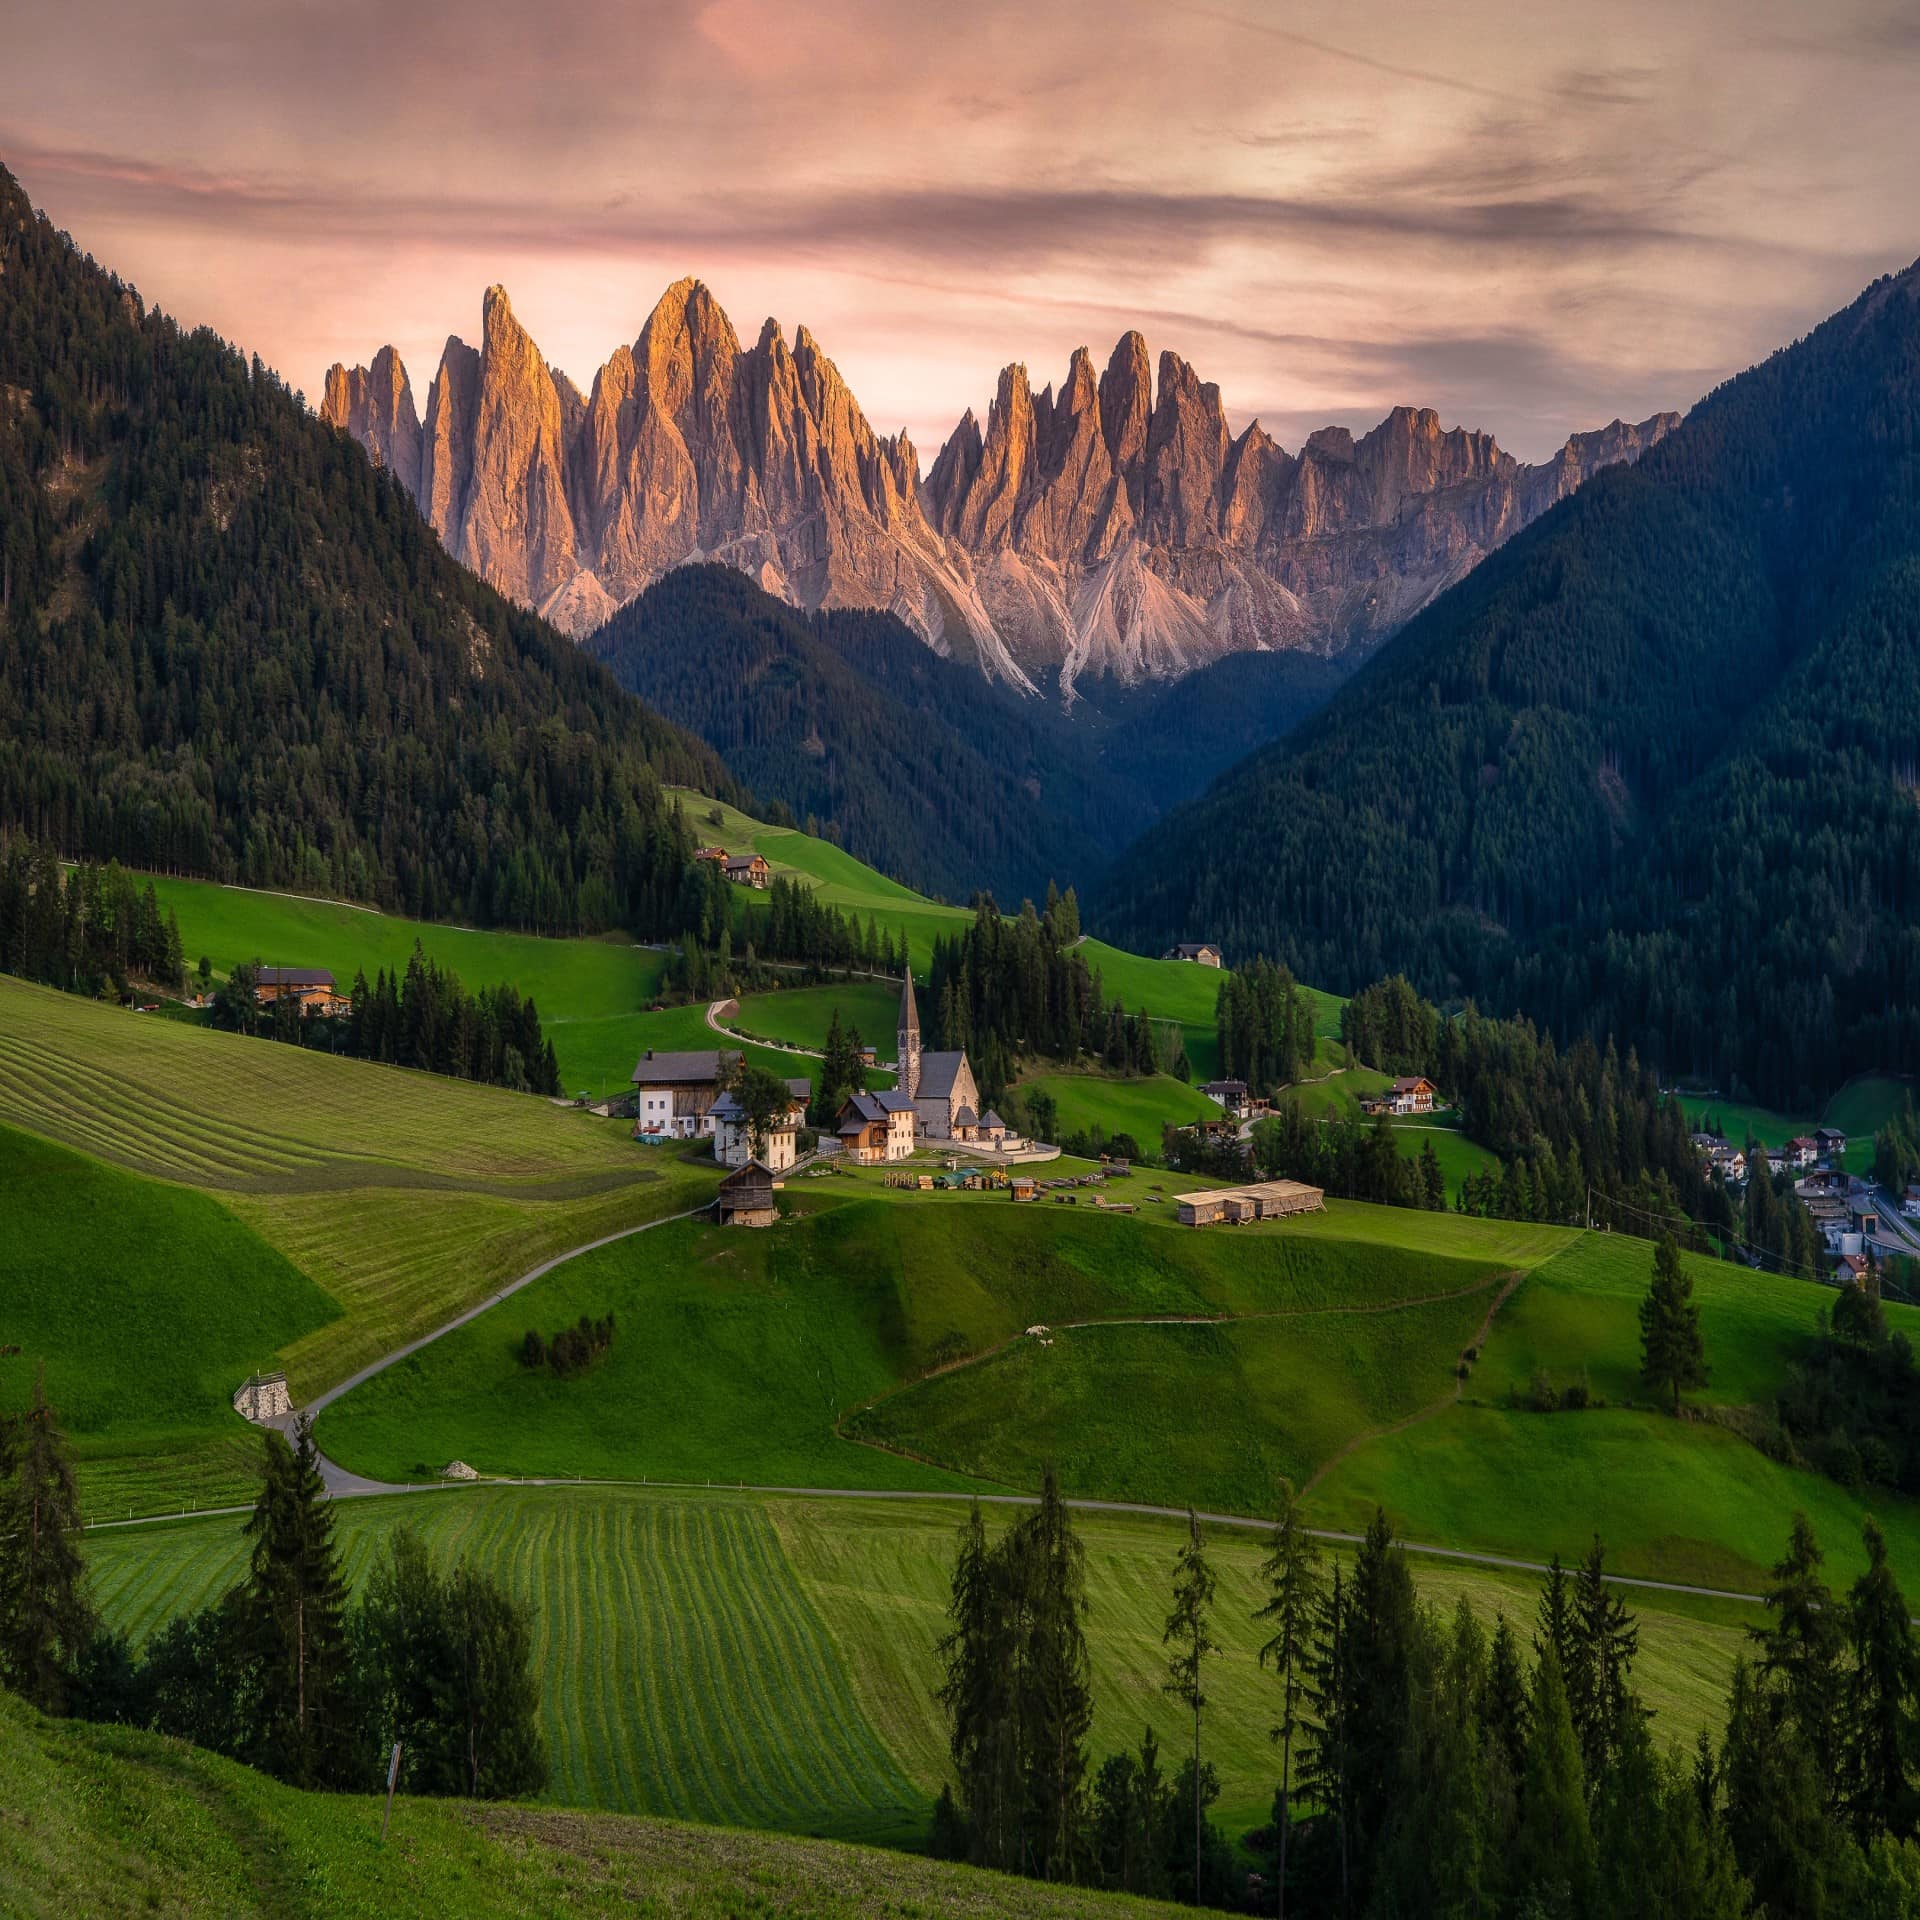 Panoramablick auf ein Dorf in Südtirol zwischen grünen Wiesen, Wäldern und Bergen. 